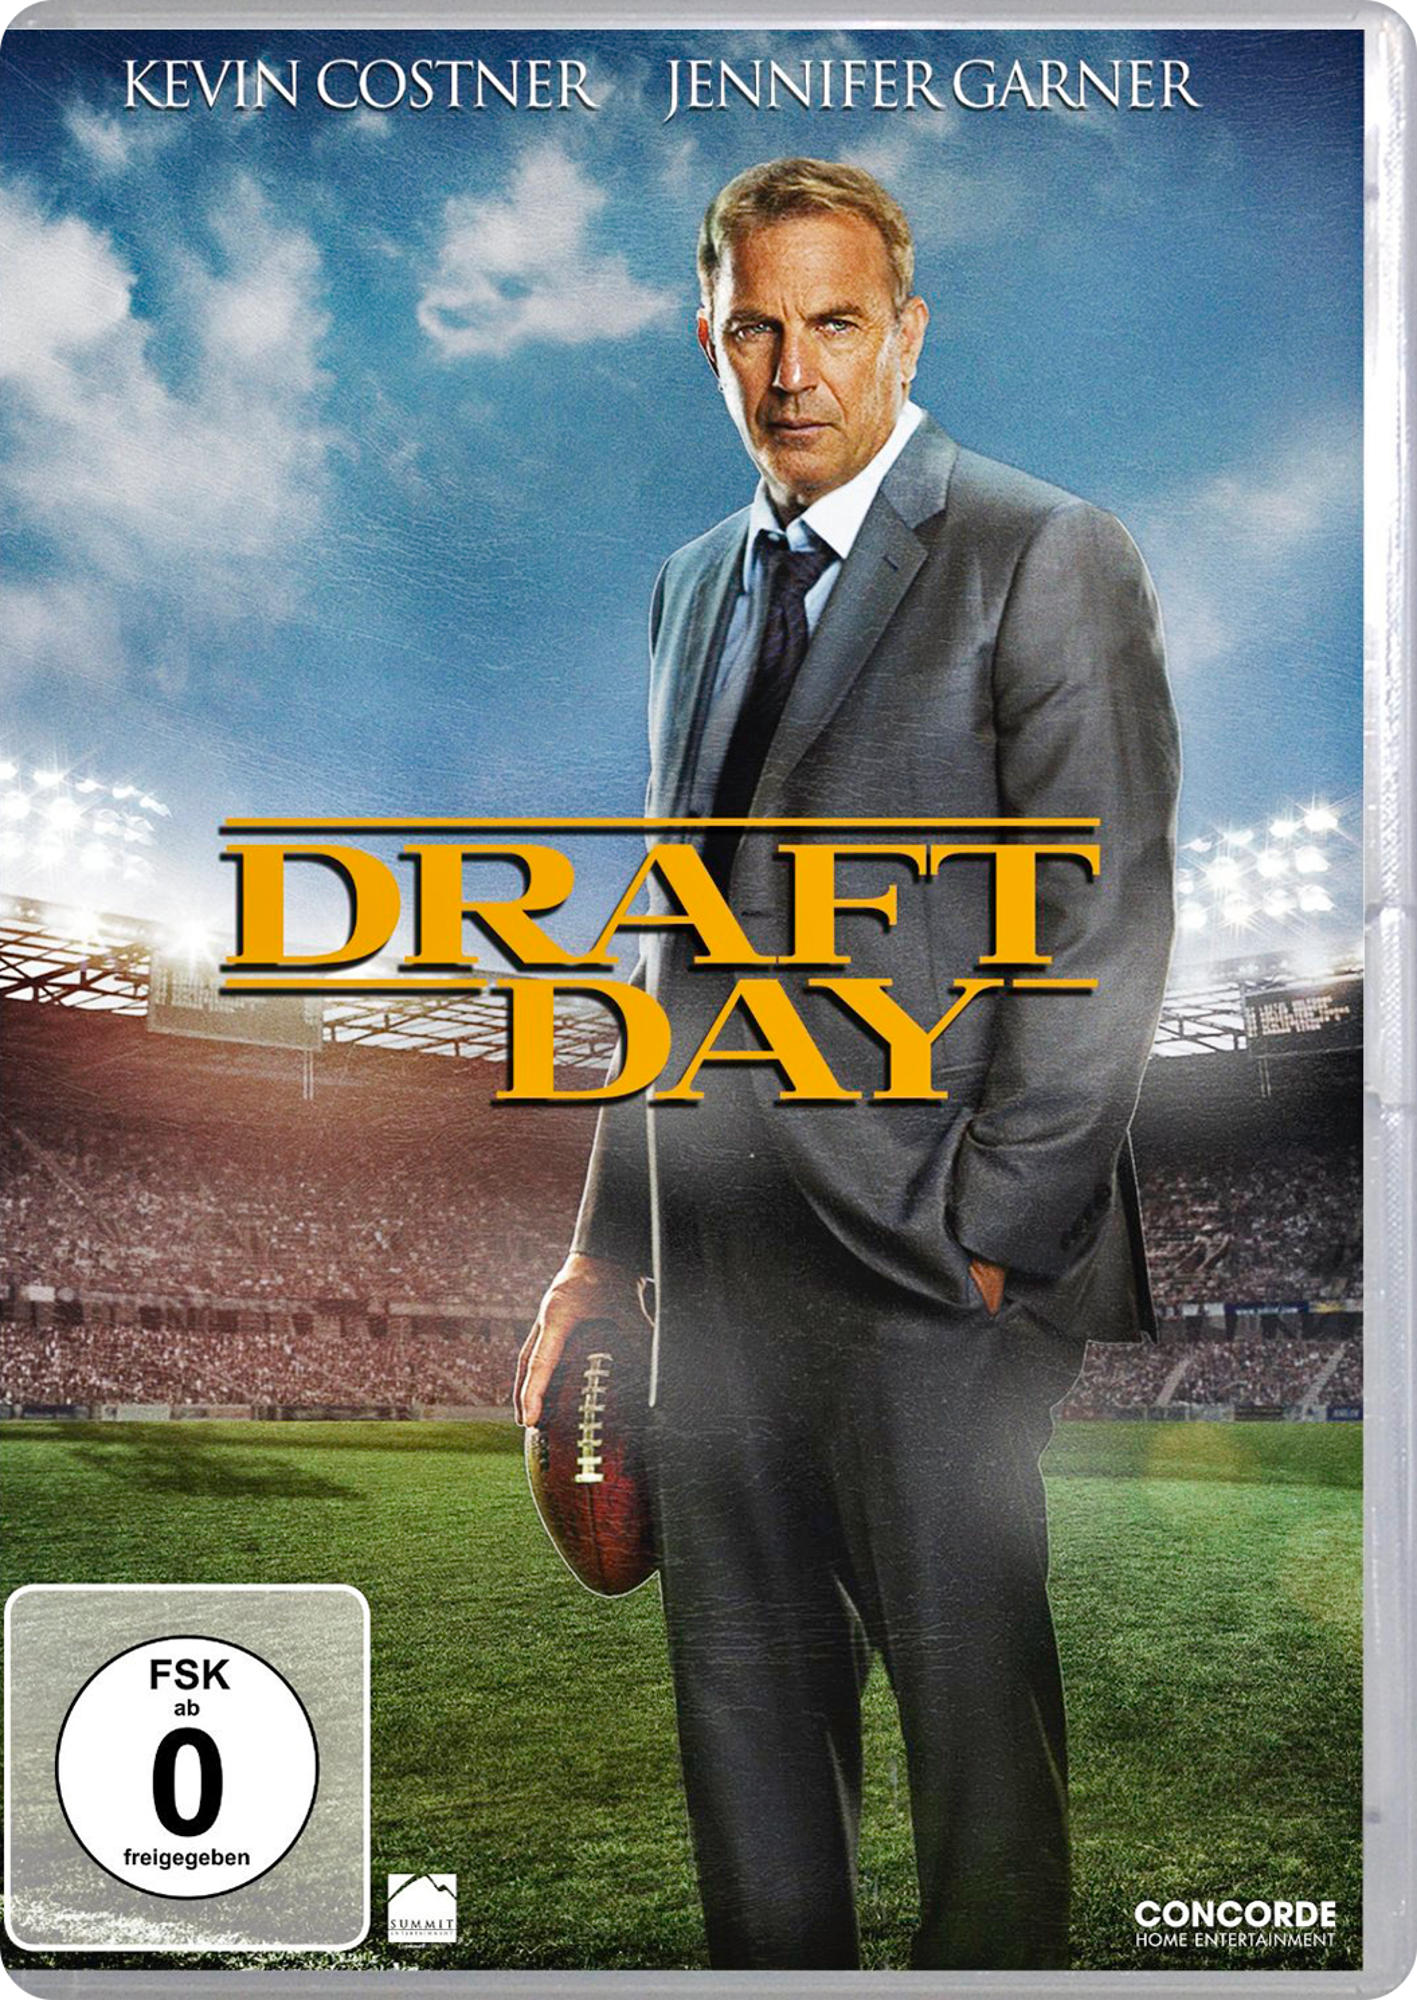 - Entscheidung Tag Day der DVD Draft